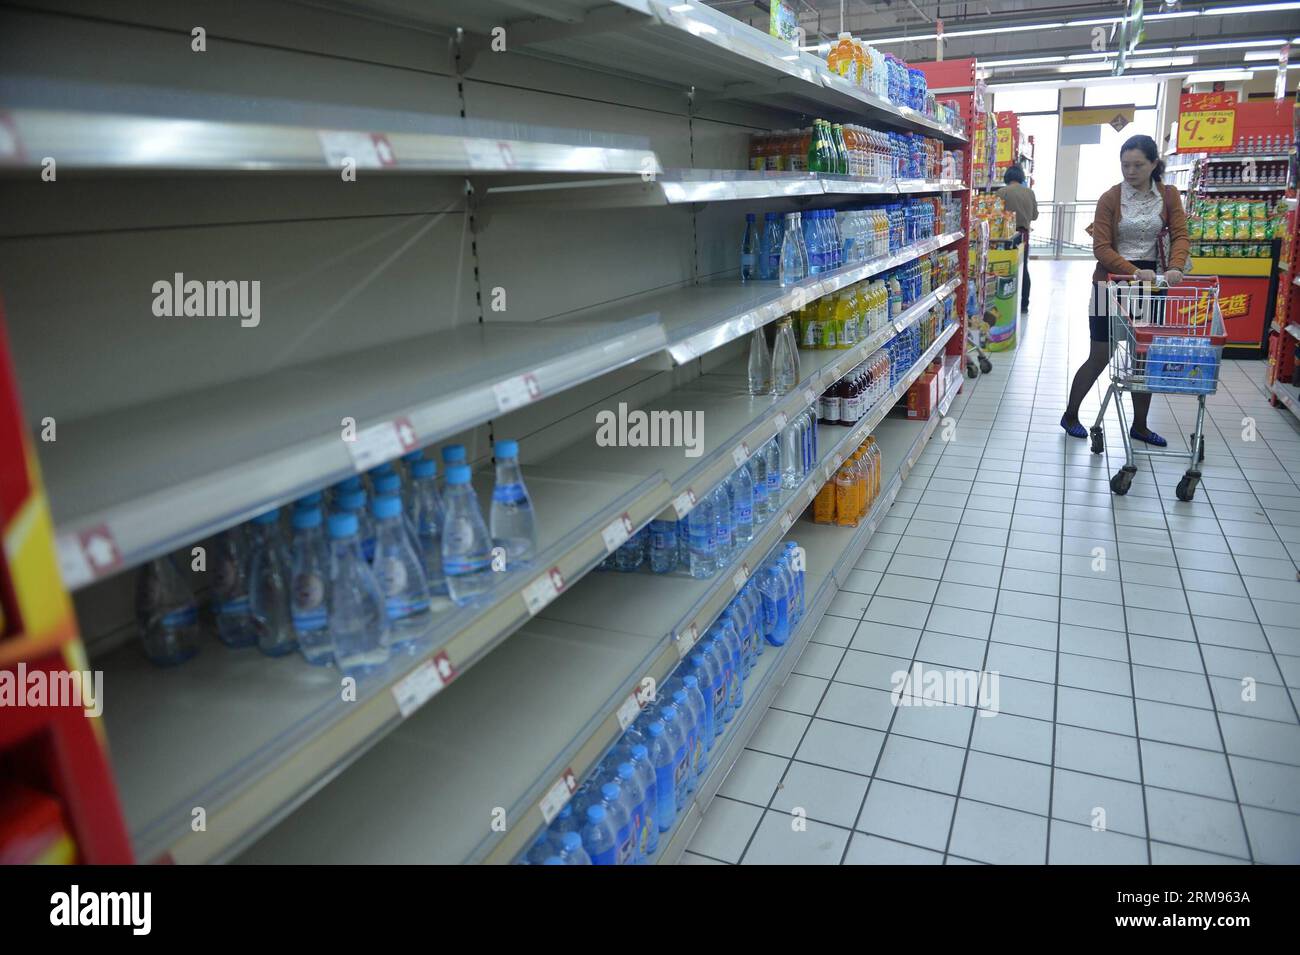 (140509) -- JINGJIANG, 9 maggio 2014 (Xinhua) -- Un residente acquista acqua potabile in bottiglia in un supermercato nella città di Jingjiang, nella provincia di Jiangsu della Cina orientale, 9 maggio 2014. L’approvvigionamento idrico a Jingjiang è ripreso venerdì dopo che, secondo le autorità locali, è stata riscontrata una qualità anomala dell’acqua nella fonte d’acqua del fiume Yangtze. La città ha iniziato l'approvvigionamento idrico di riserva alle 16:40, secondo il dipartimento pubblicitario della città. (Xinhua/Shen Peng) (wf) FOCUS CHINA-JIANGSU-JINGJIANG-WATER SUPPLY-RESUMPTION (CN) PUBLICATIONxNOTxINxCHN 140509 Jingjiang 9 maggio 2014 XINHUA A a Resident acquista W imbottigliato potabile Foto Stock